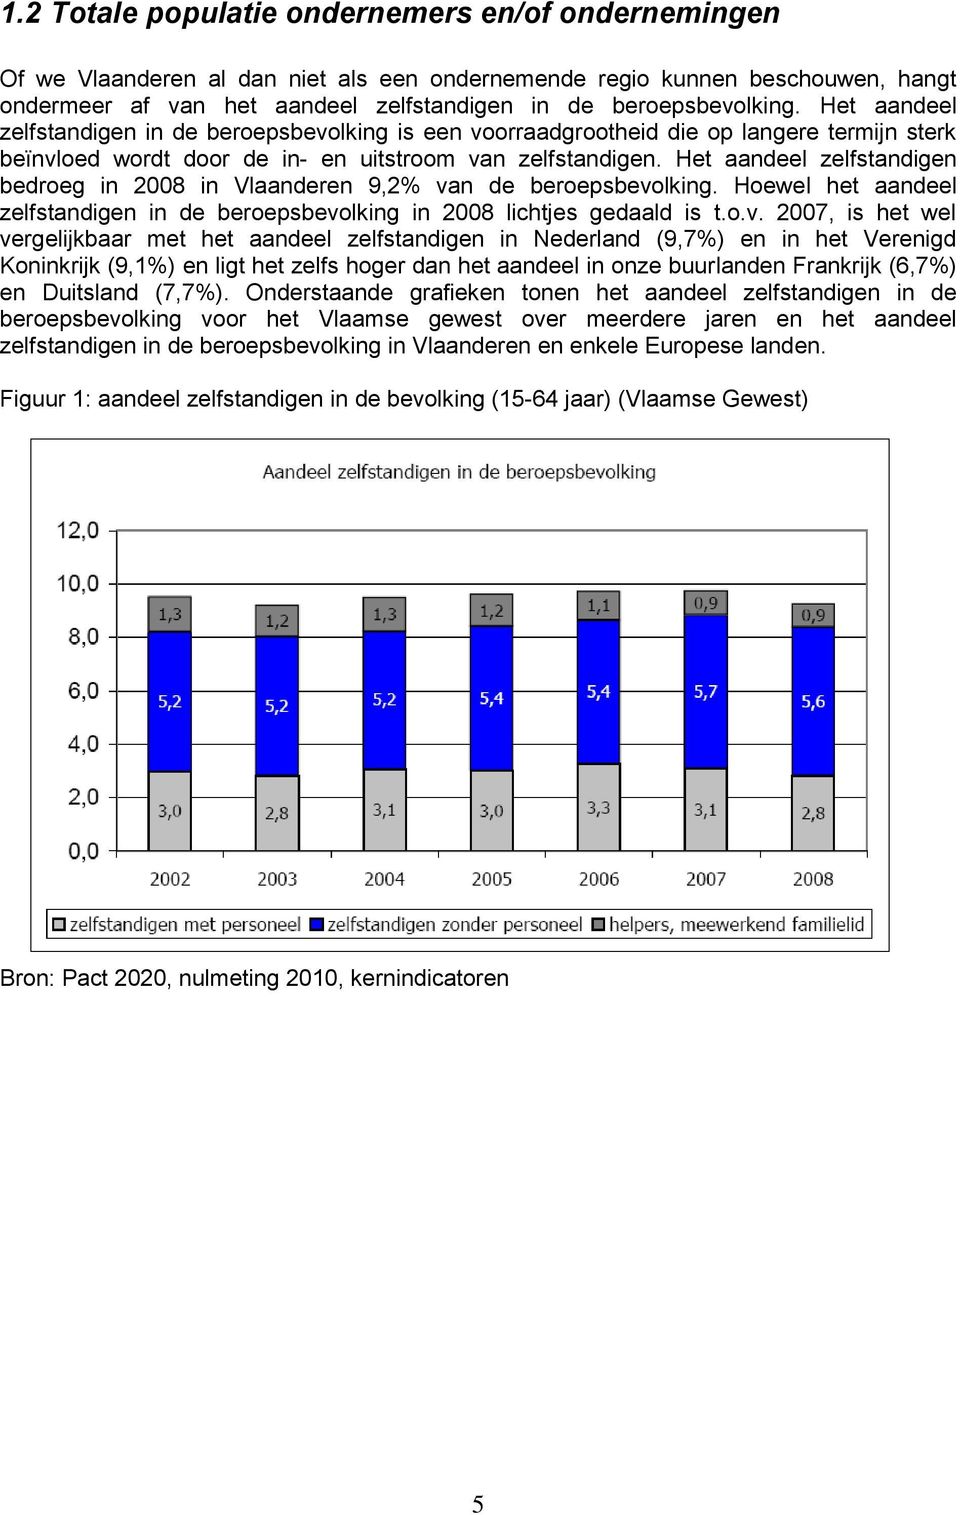 Het aandeel zelfstandigen bedroeg in 2008 in Vlaanderen 9,2% va